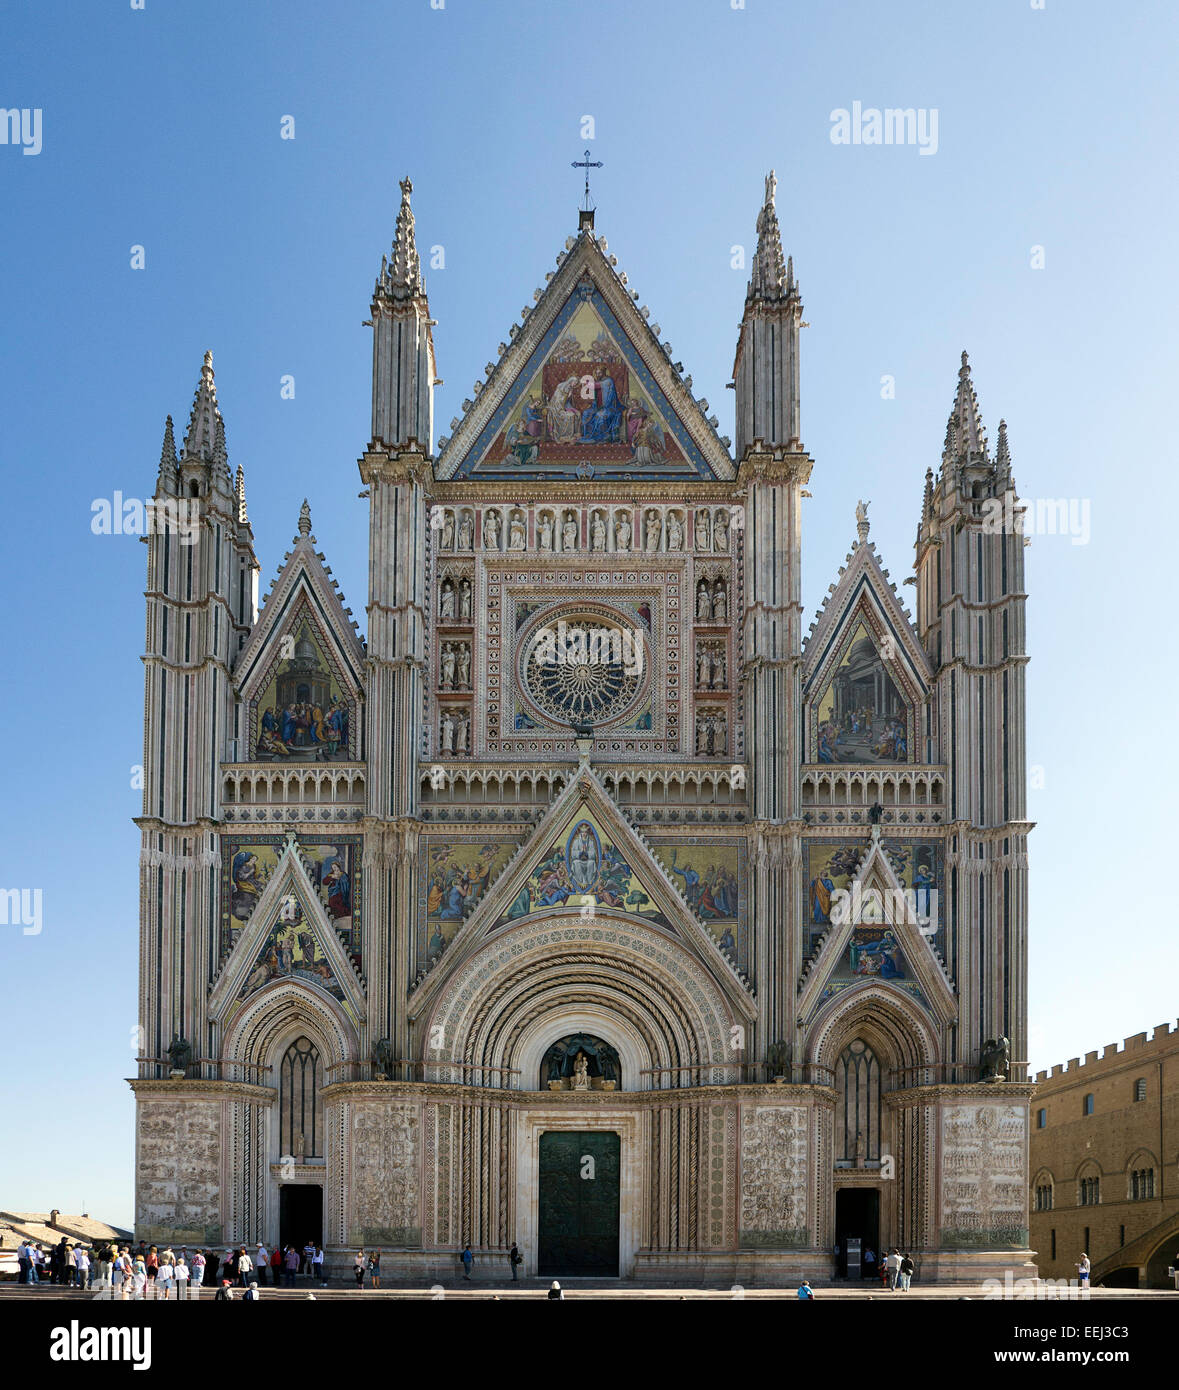 La gótica fachada frontal (oeste) de la Catedral de Orvieto en Orvieto, Umbría, Italia. Construido principalmente en el siglo 14. Foto de stock